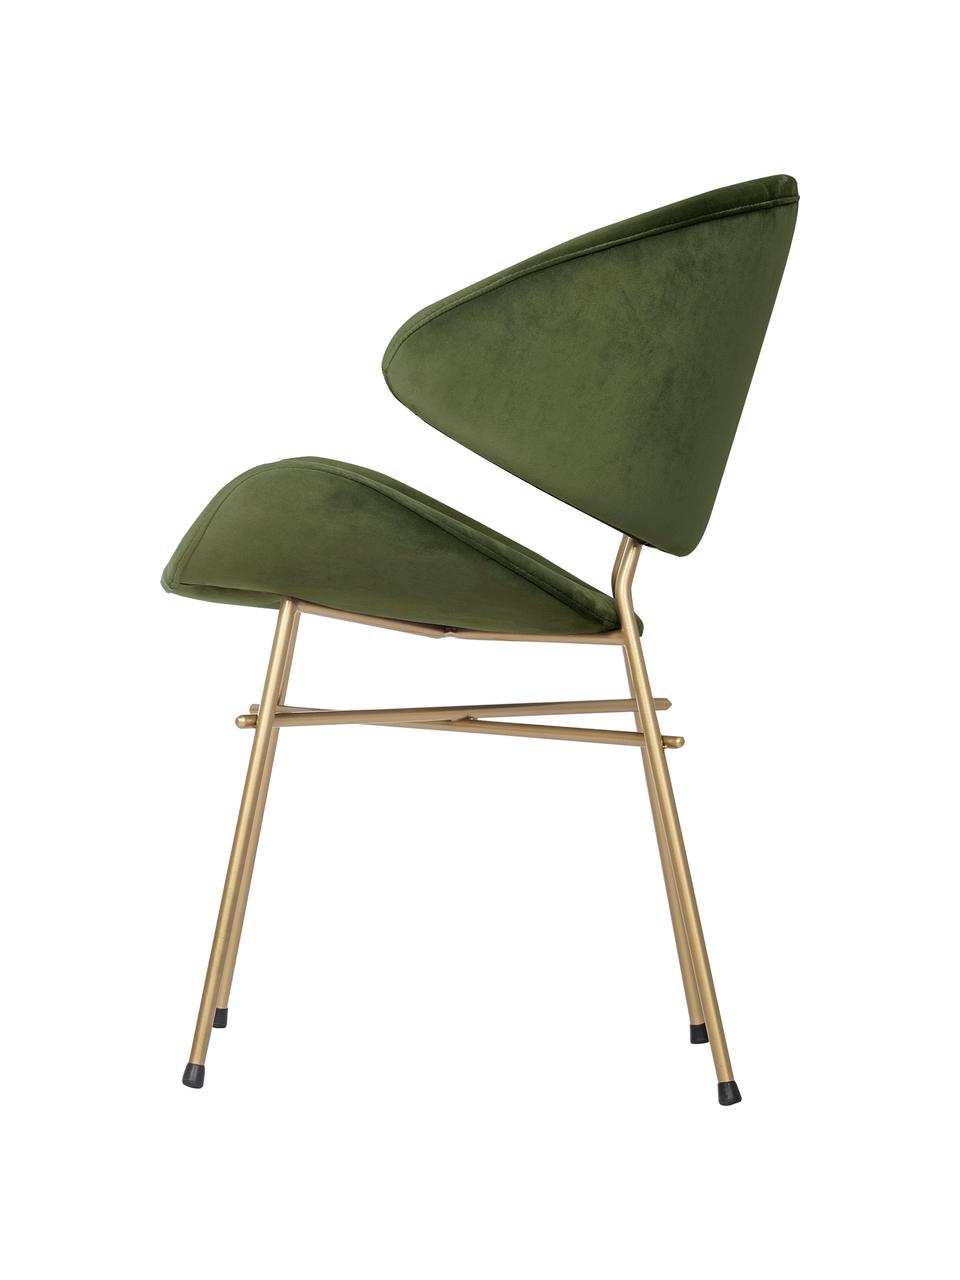 Krzesło tapicerowane z weluru Cheri, Tapicerka: 100% poliester (welur), Stelaż: stal malowana proszkowo, Zielony aksamit, odcienie mosiądzu, S 57 x G 55 cm